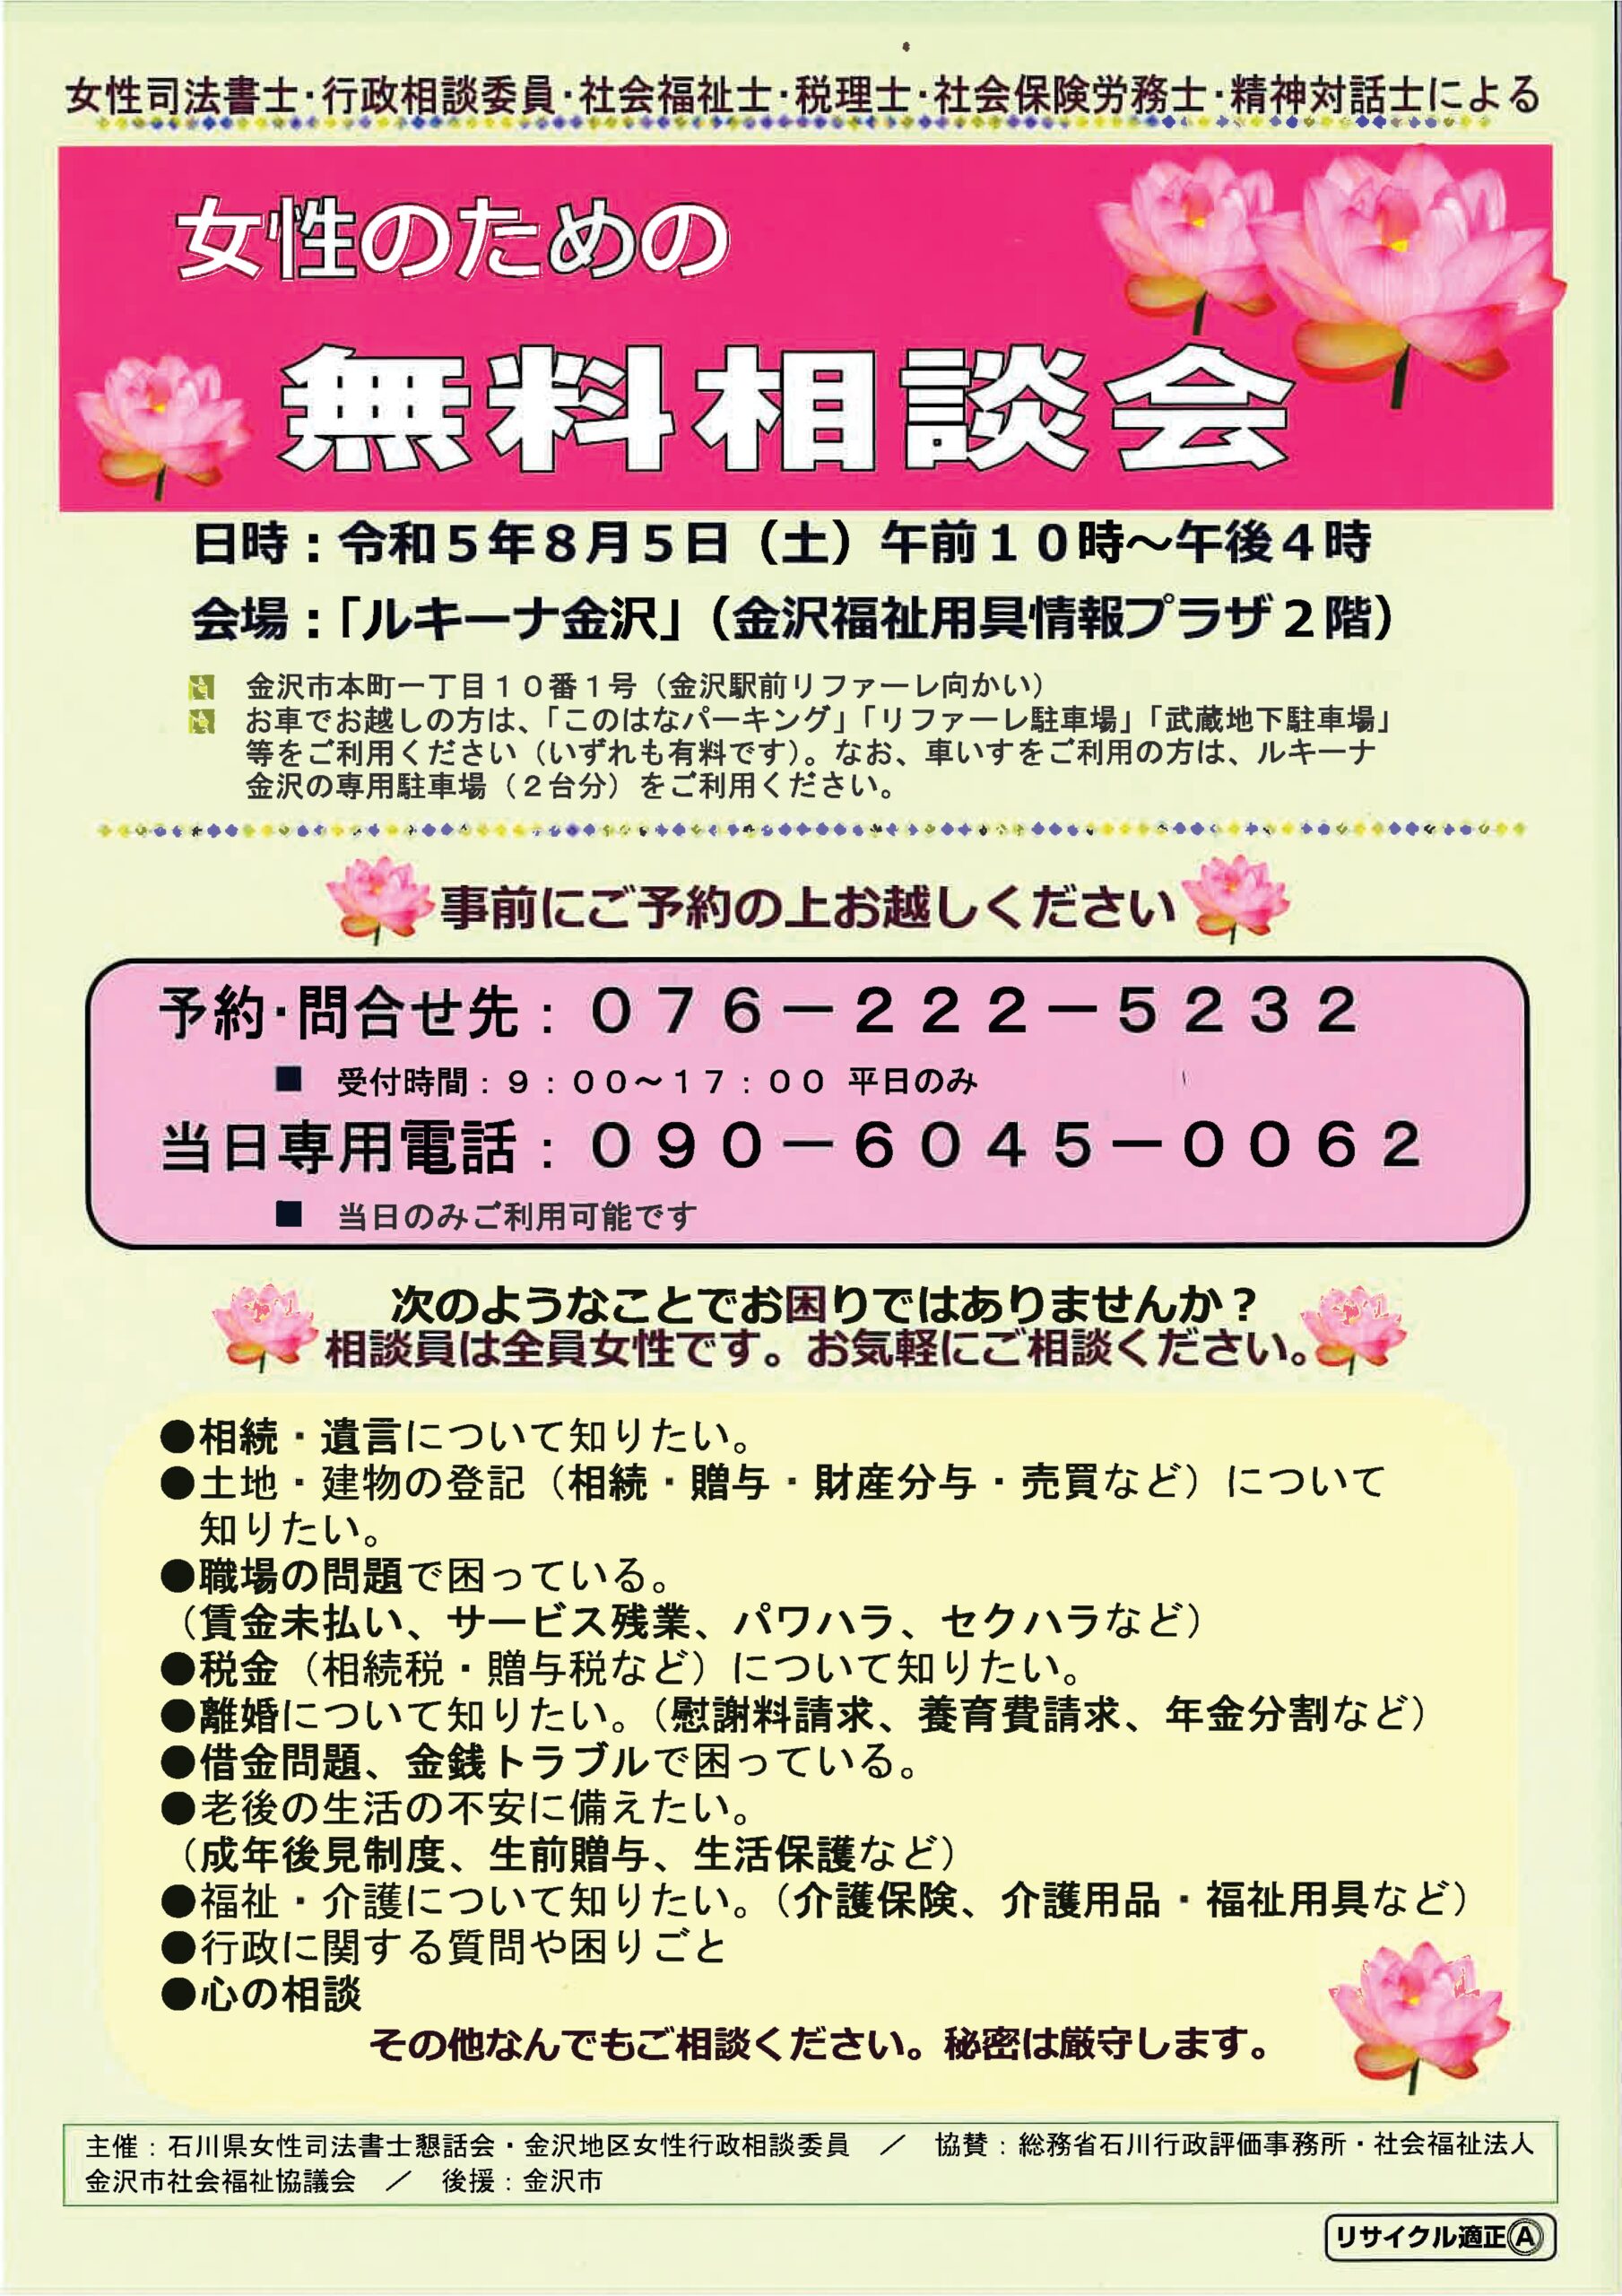 女性のための無料相談会 | 石川県の社会保険労務士法人ウィズ